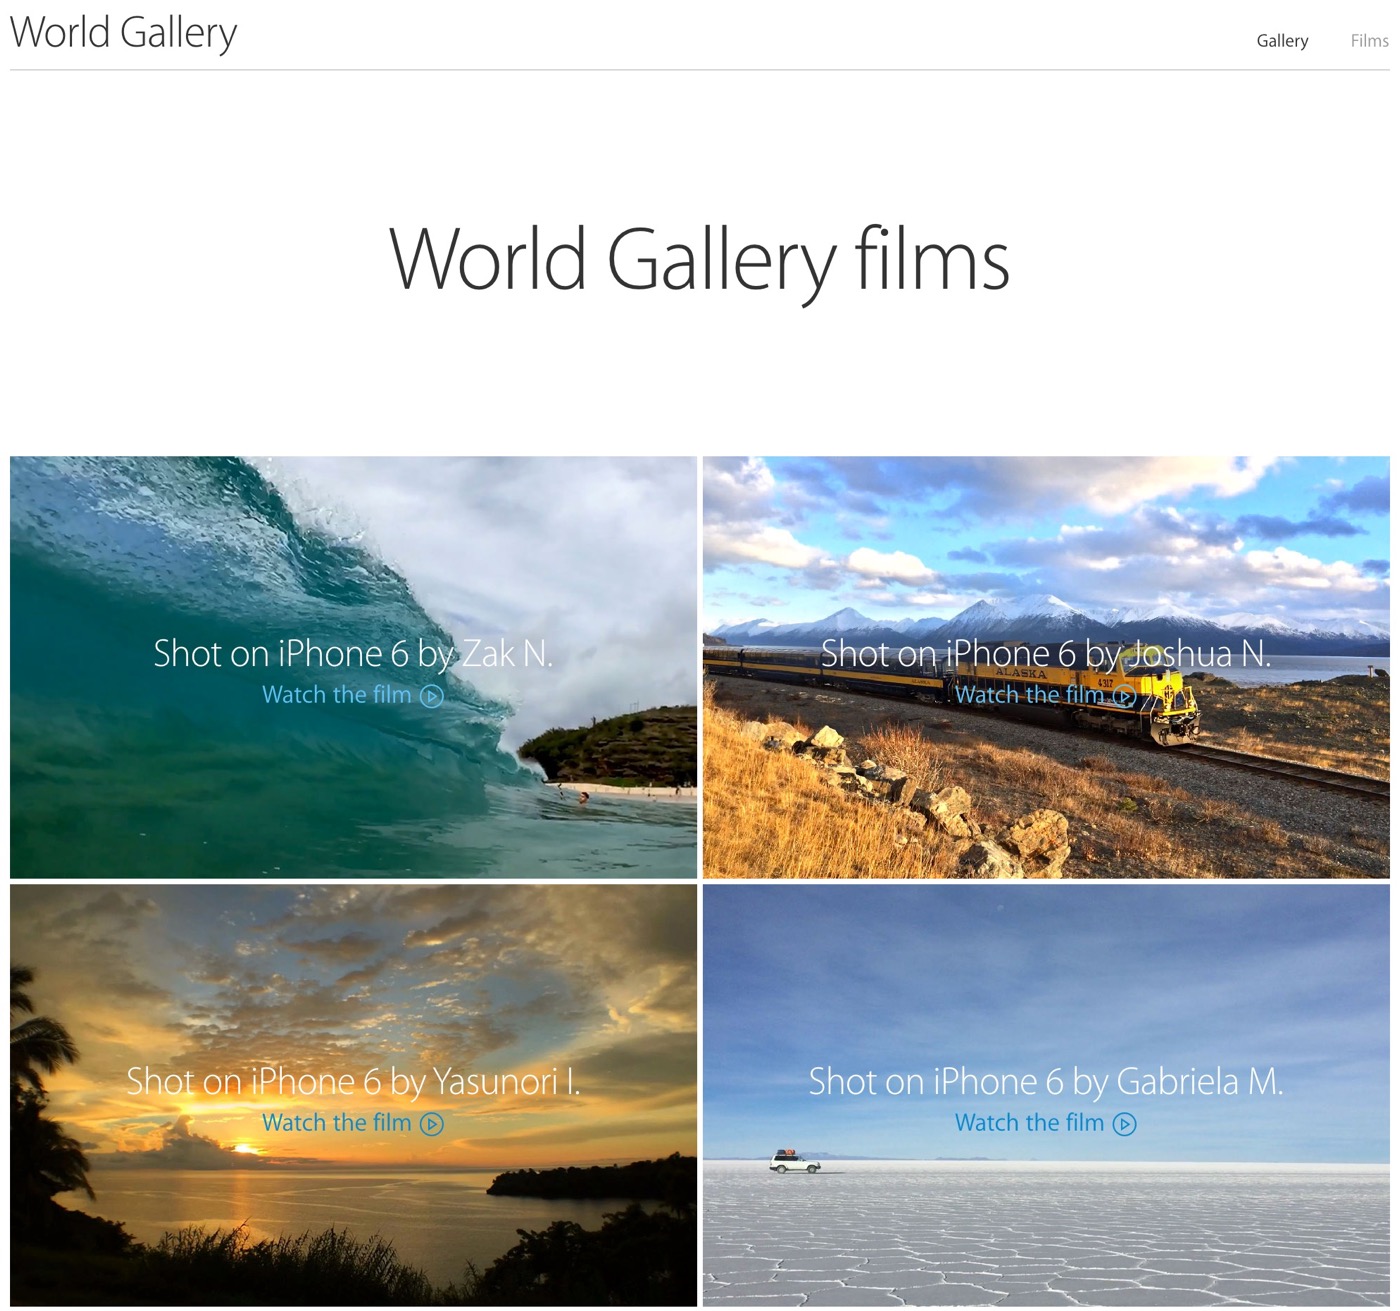 米Apple、｢iPhone 6｣で撮影した映像を紹介する｢World Gallery films｣で新たに5本の映像を公開